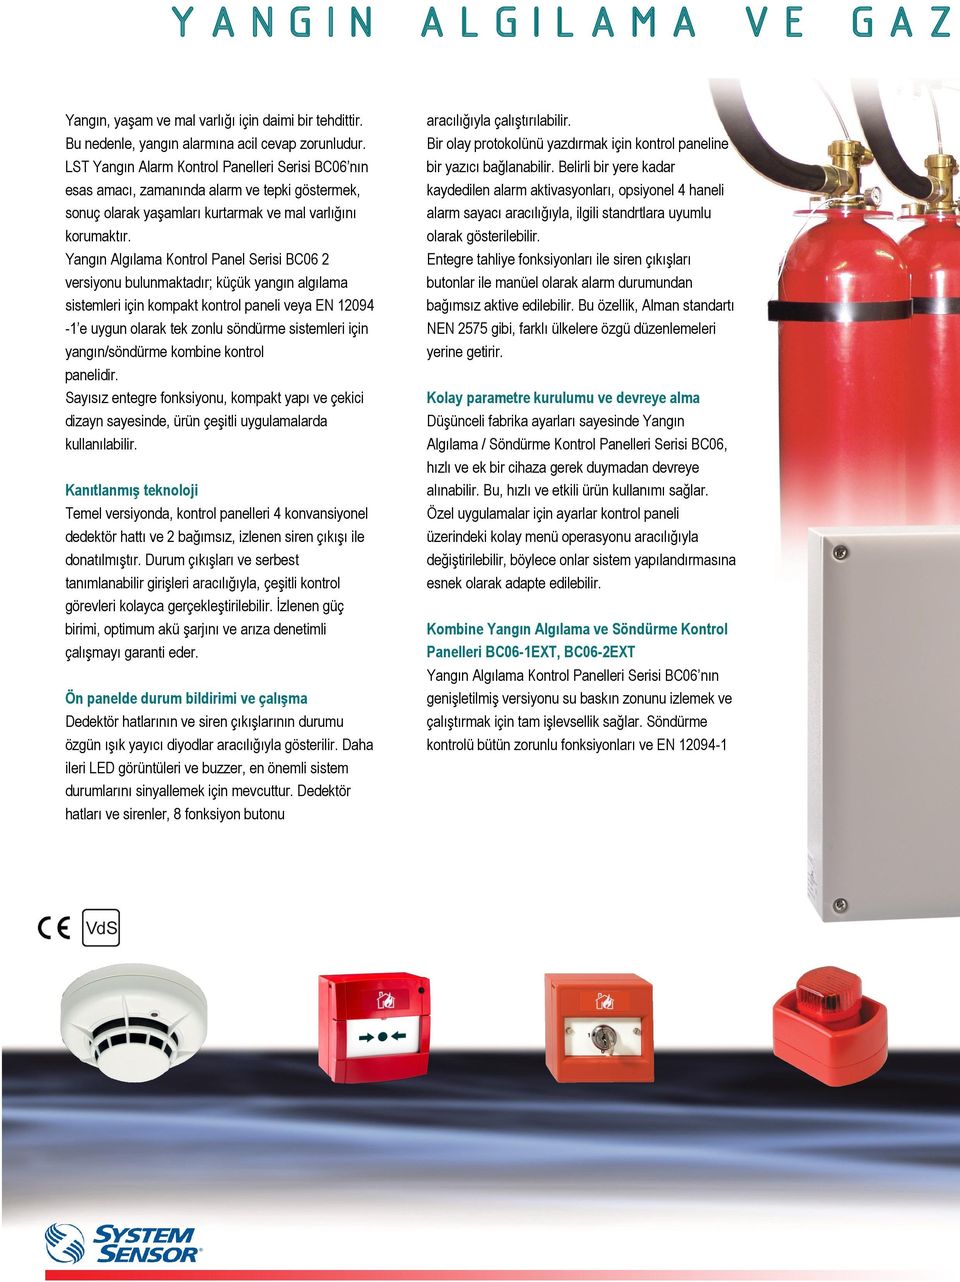 Yangın Algılama Kontrol Panel Serisi BC06 2 versiyonu bulunmaktadır; küçük yangın algılama sistemleri için kompakt kontrol paneli veya EN 12094-1 e uygun olarak tek zonlu söndürme sistemleri için